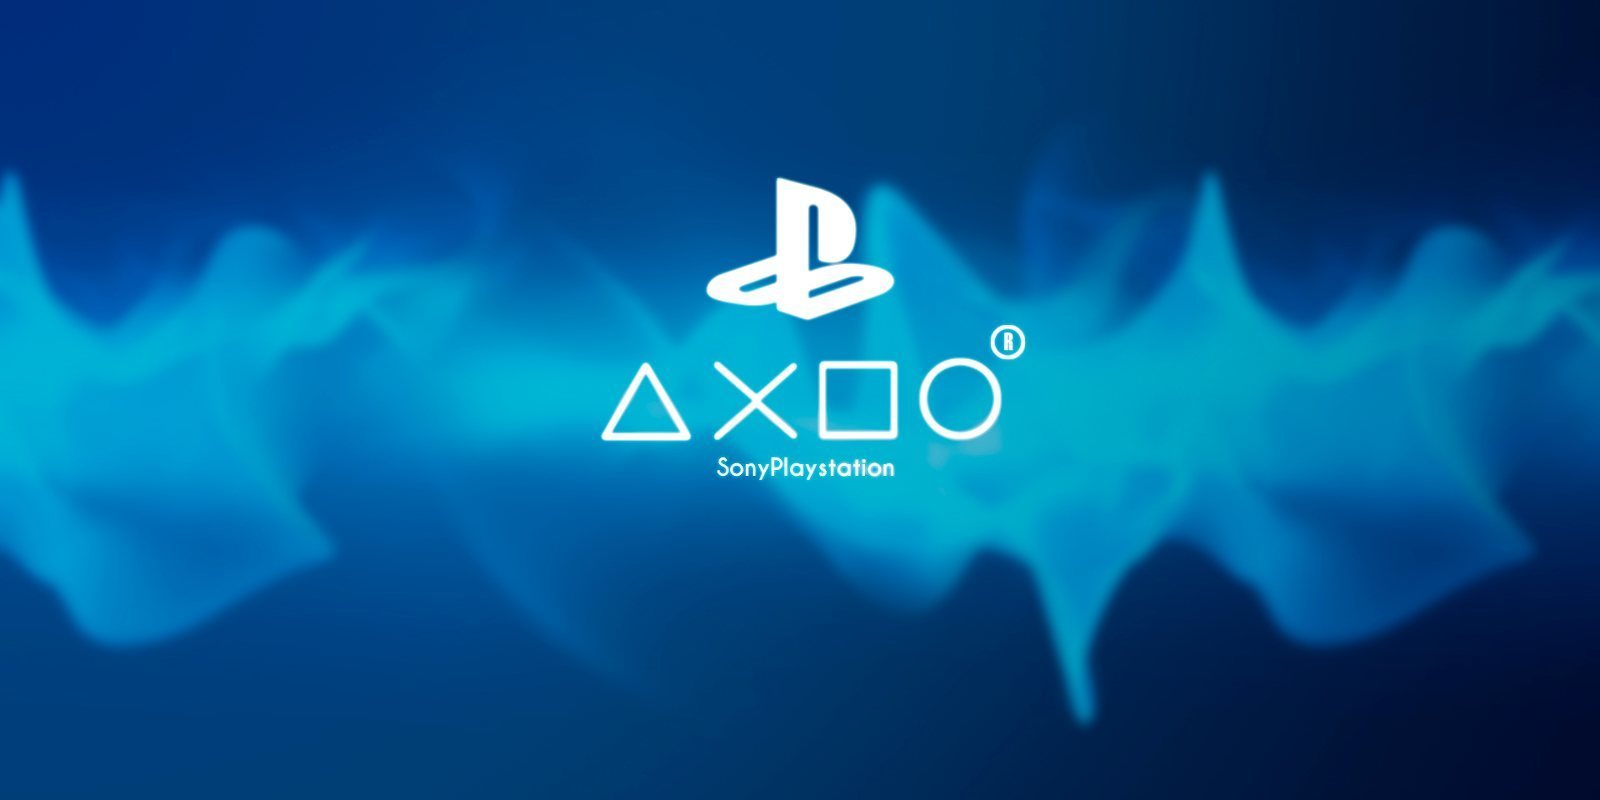 Sony confirma que PlayStation no asistirá al E3 de este año 2020, ya que tienen otra estrategia